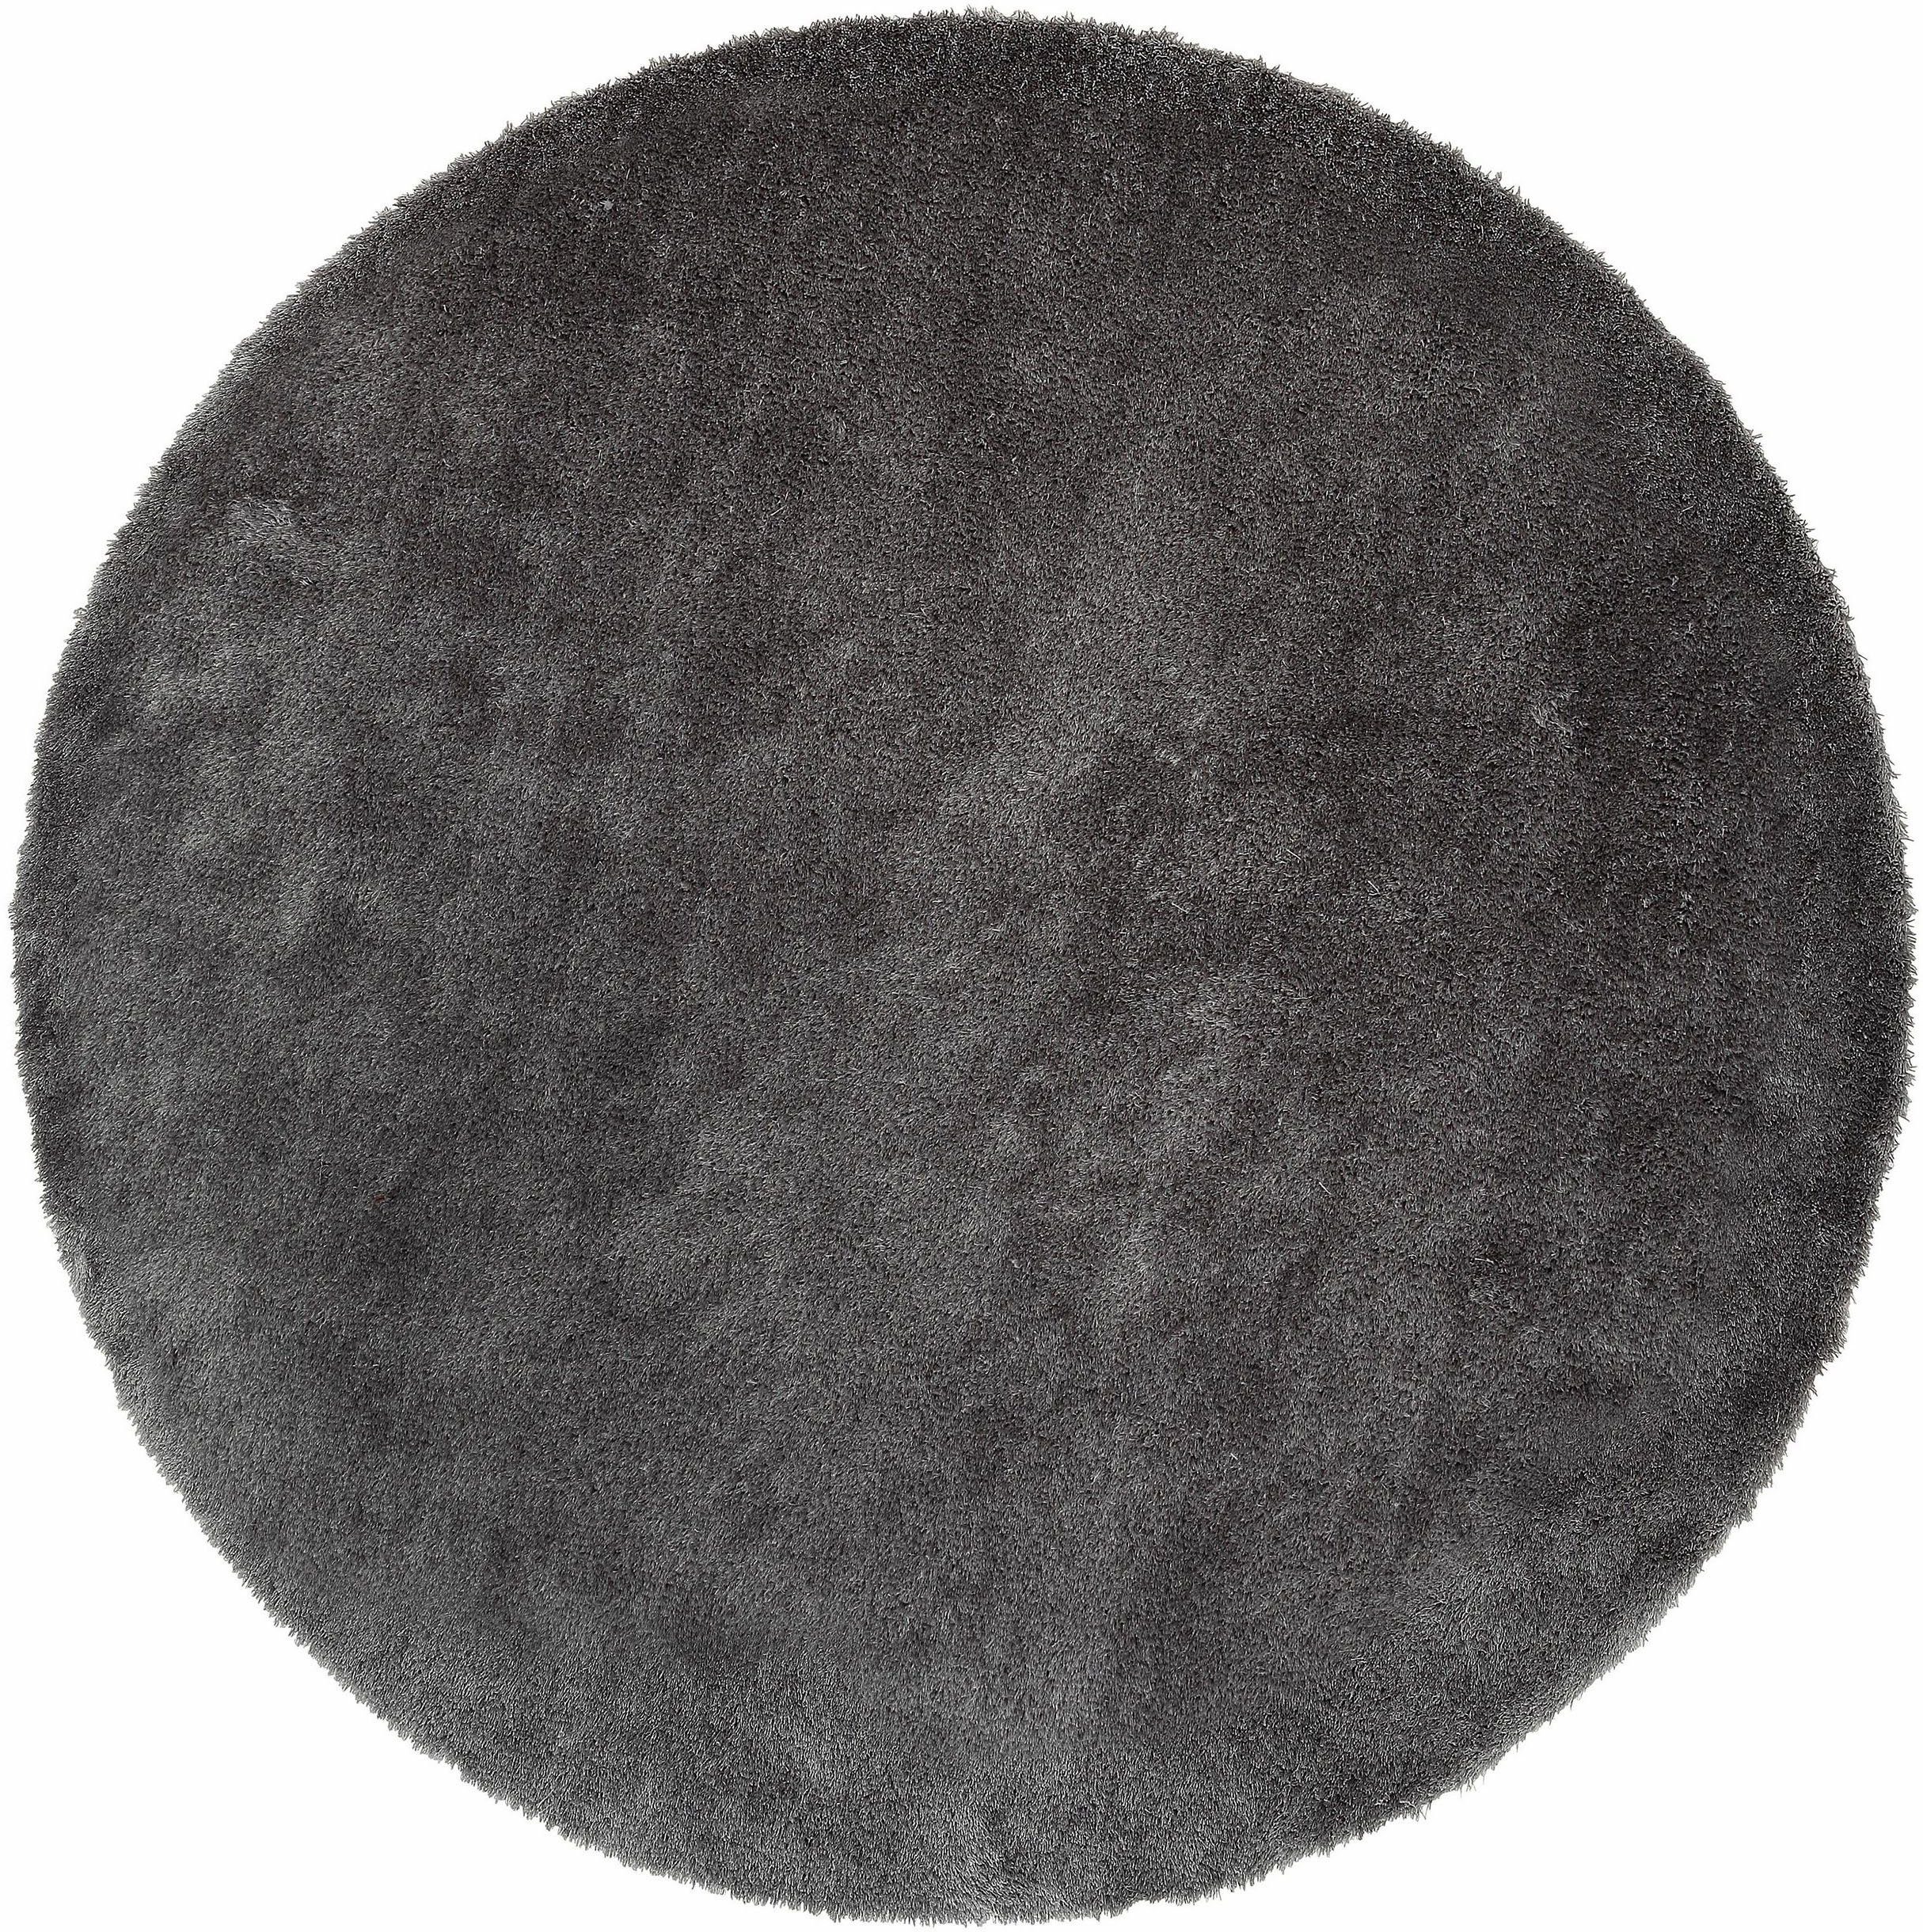 Hochflor-Teppich Deman, Home affaire, rund, Höhe: 25 mm, Uni-Farben, besonders weich und kuschelig durch Mikrofaser, rund grau